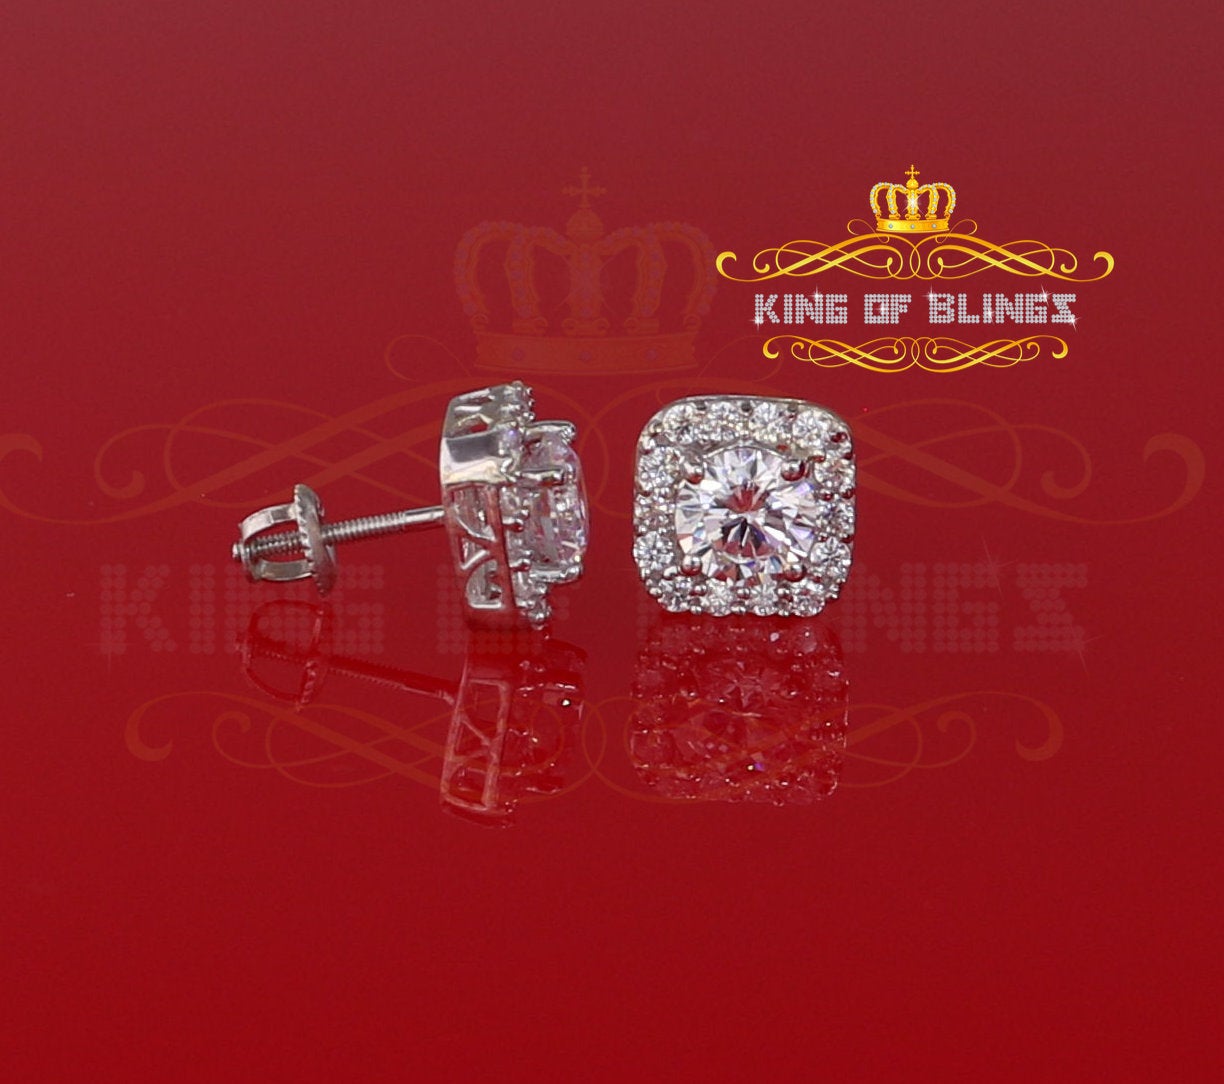 King of Blings- White 3.8ct Cubic Zirconia 925 Sterling Silver Women's & Men's Square Earrings KING OF BLINGS